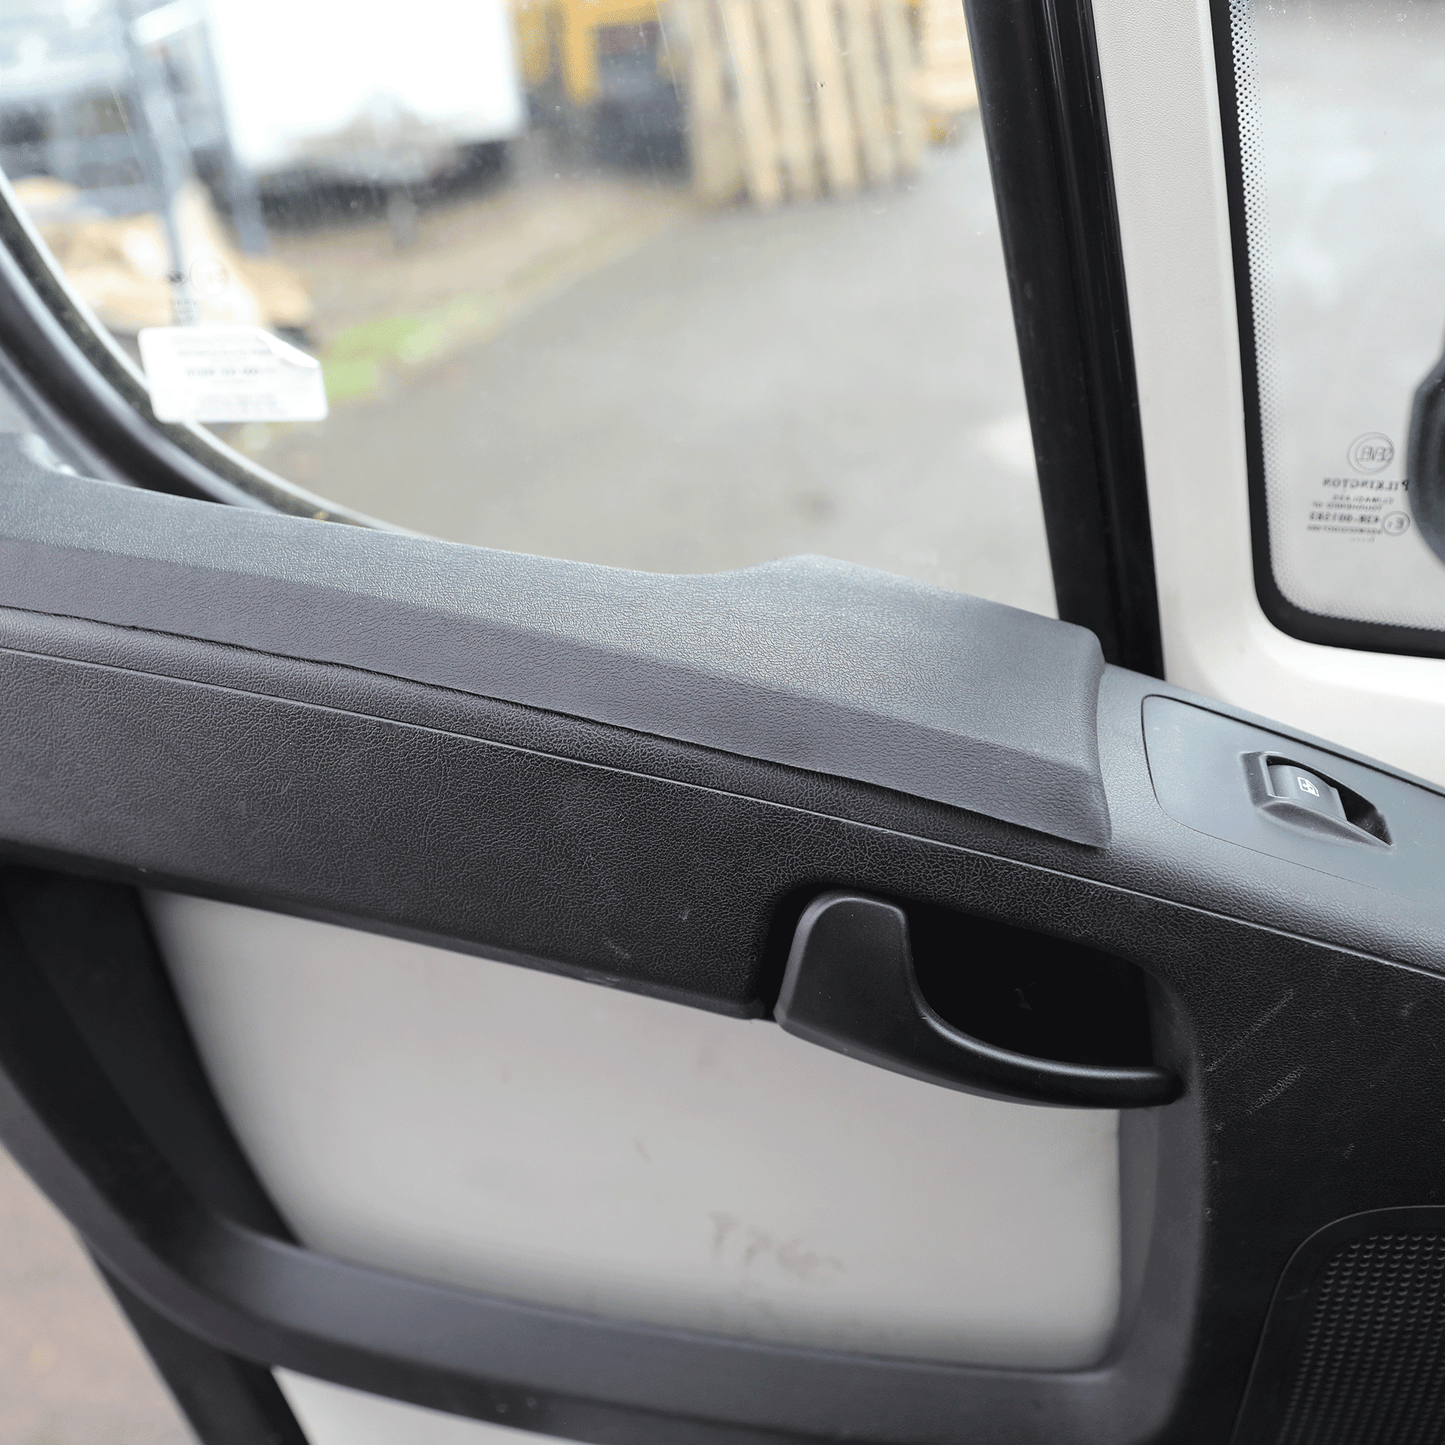 Almohadillas de reposabrazos de la tarjeta de la puerta Vauxhall Movano MK4 PU Foam Auto-Sleepers, Campervan, Bailey, Hobby, Swift, Auto-Trail